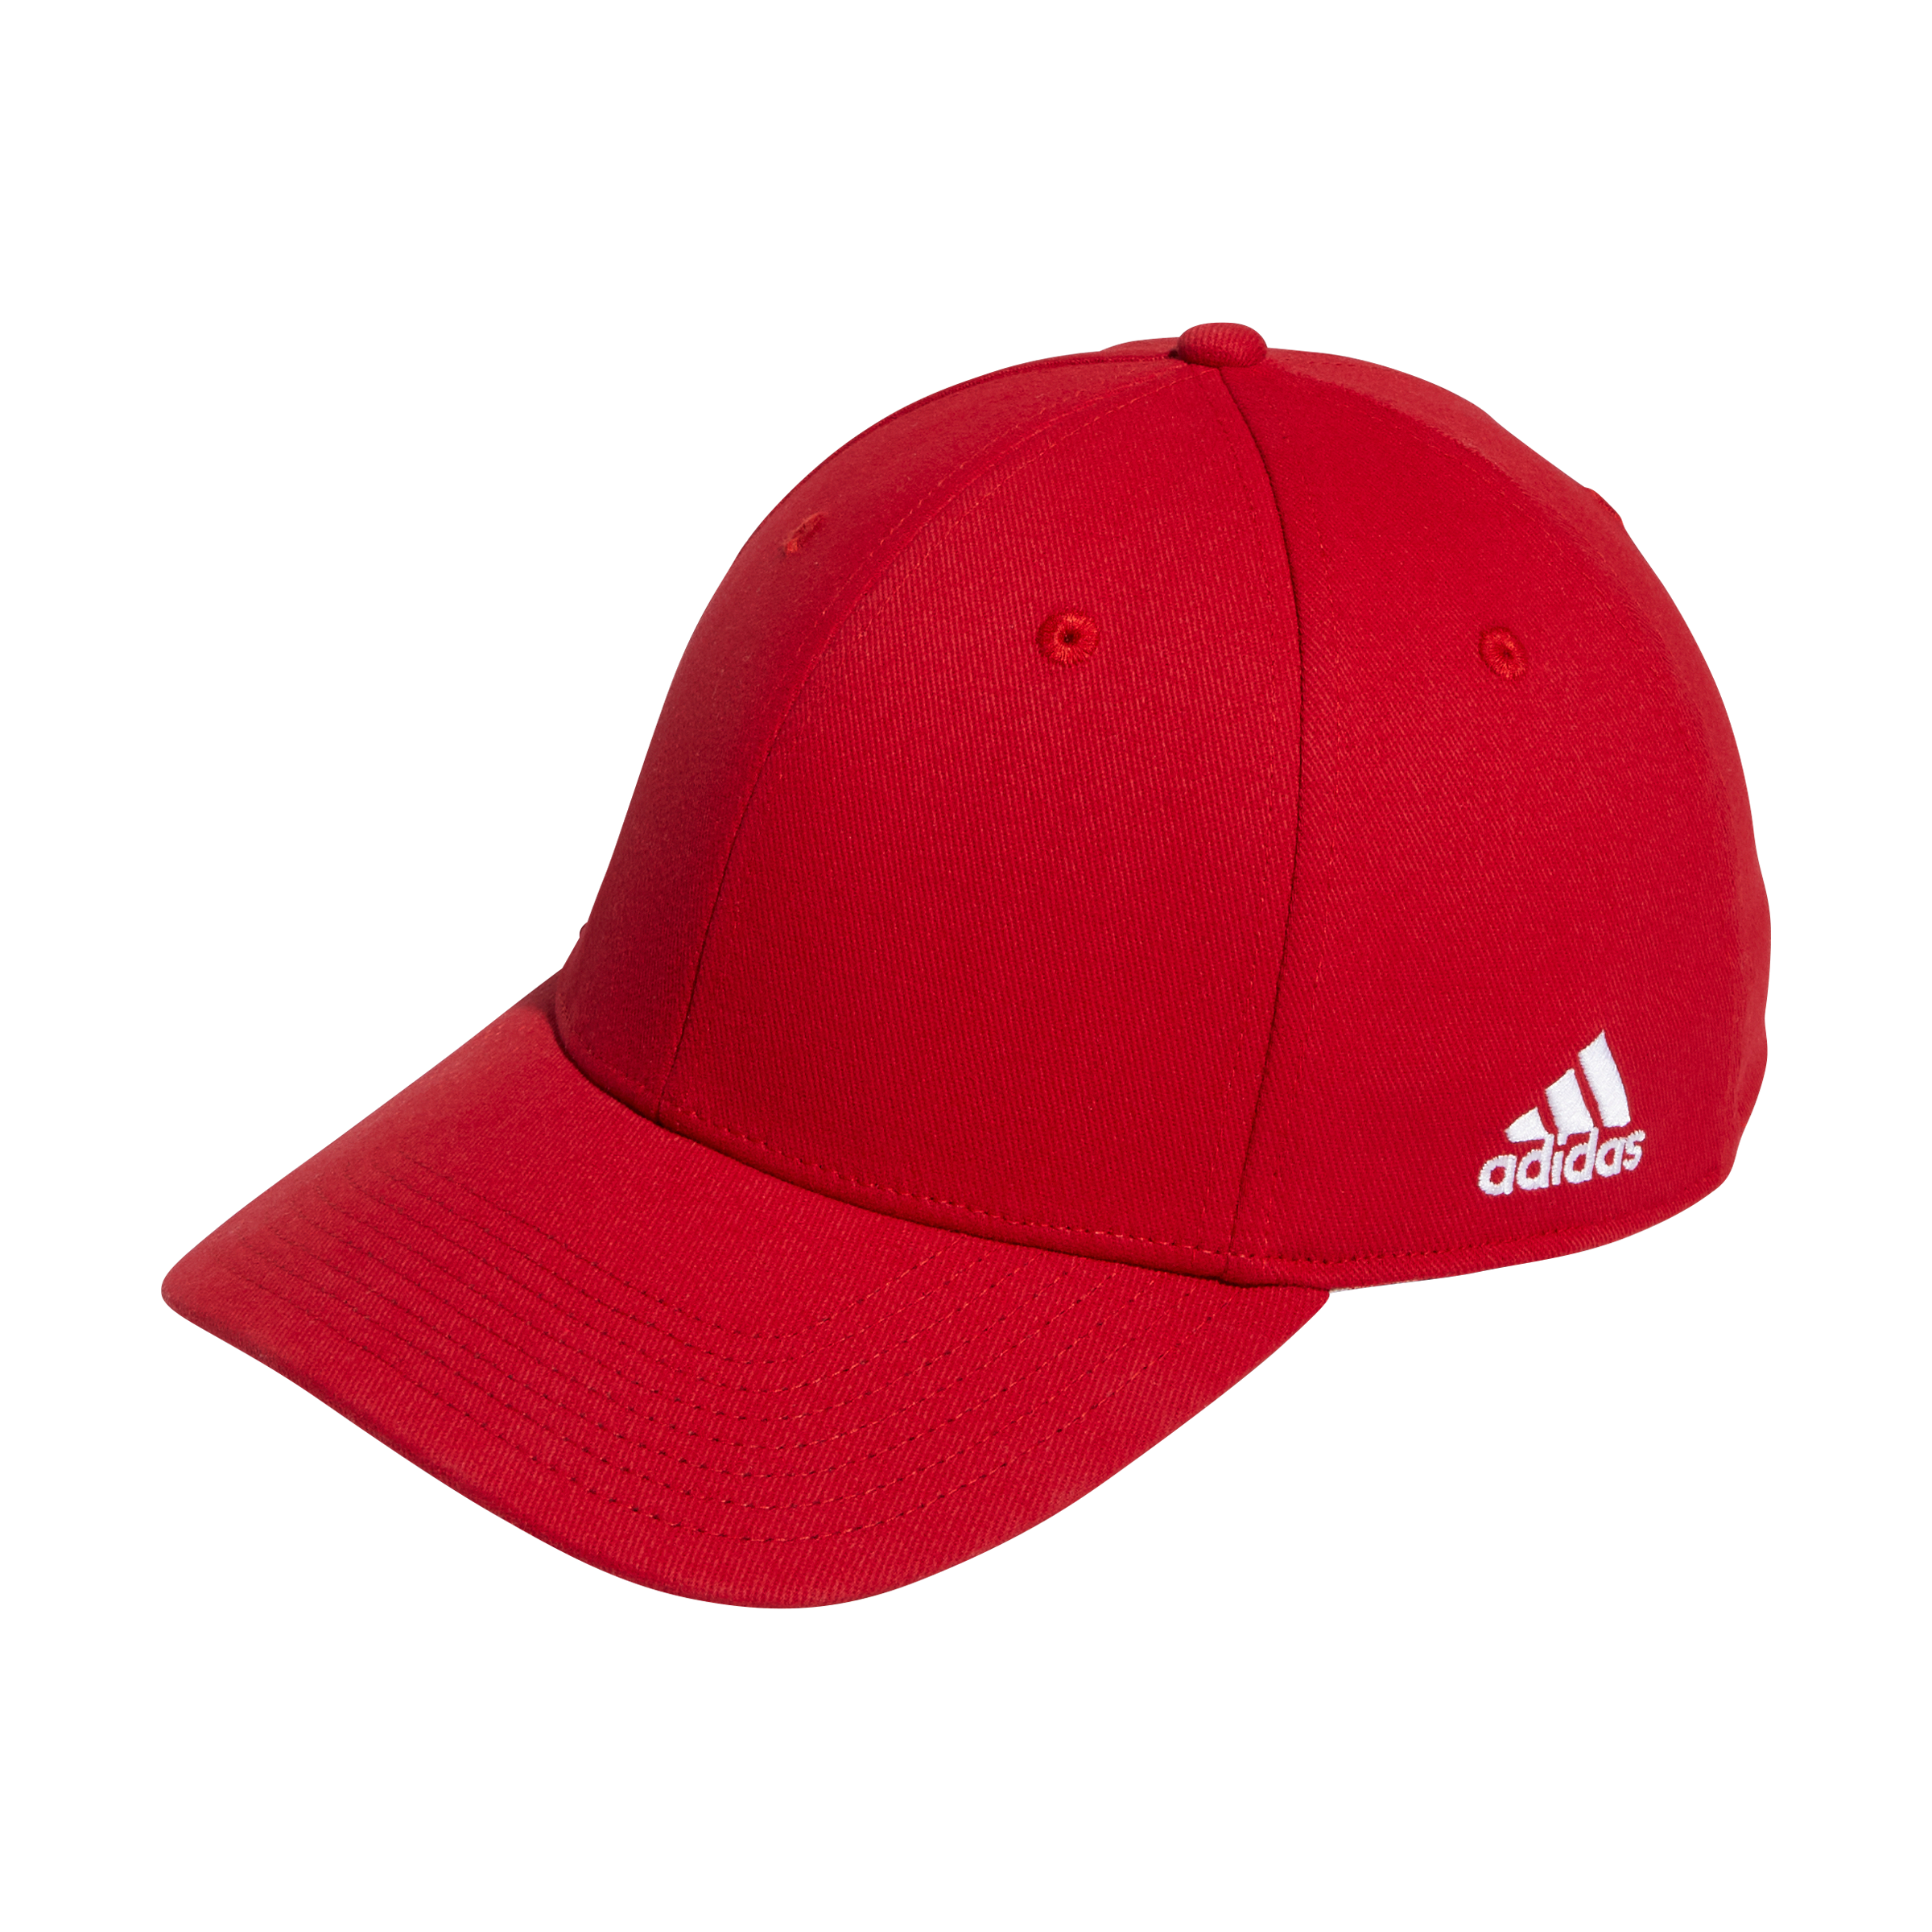 adidas Structured Flex Cap - Power Red